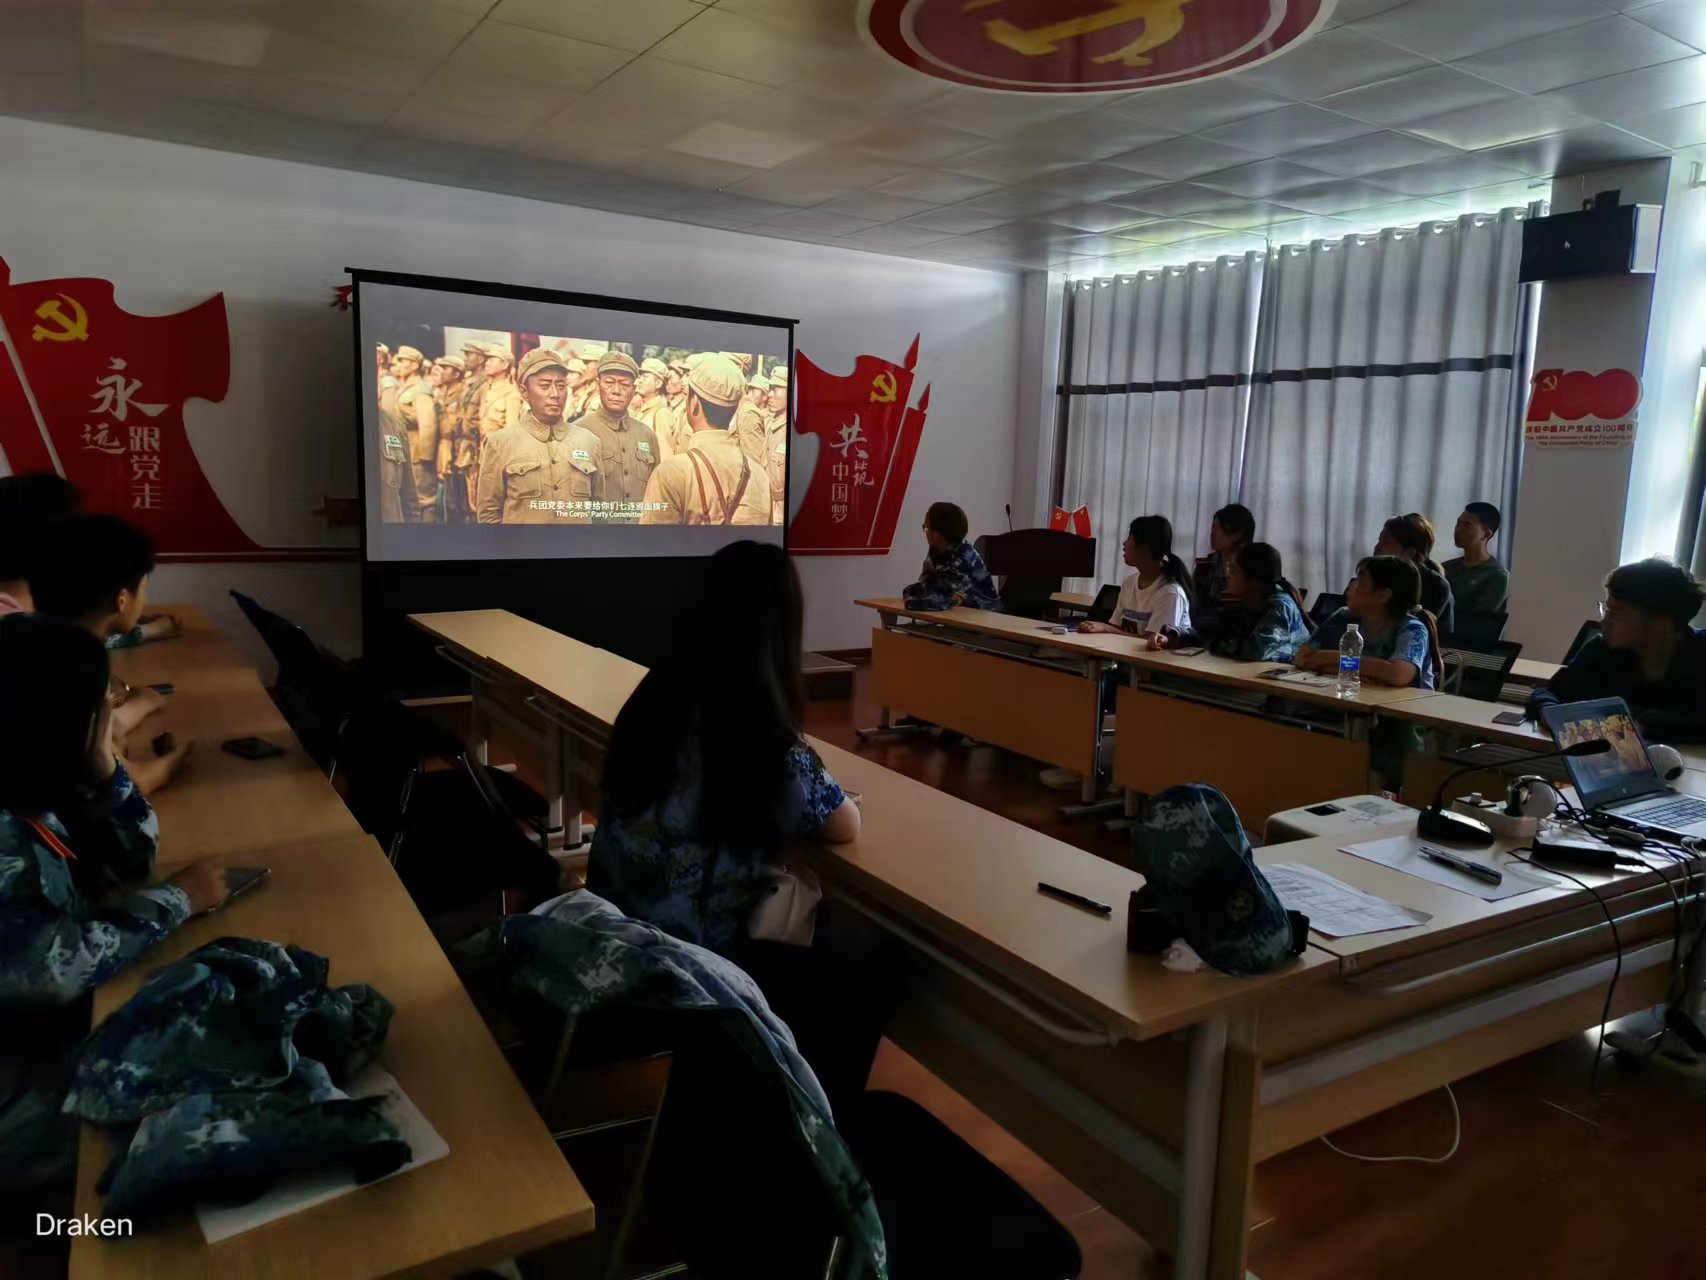 组织师生观看爱国主义电影《长津湖》。